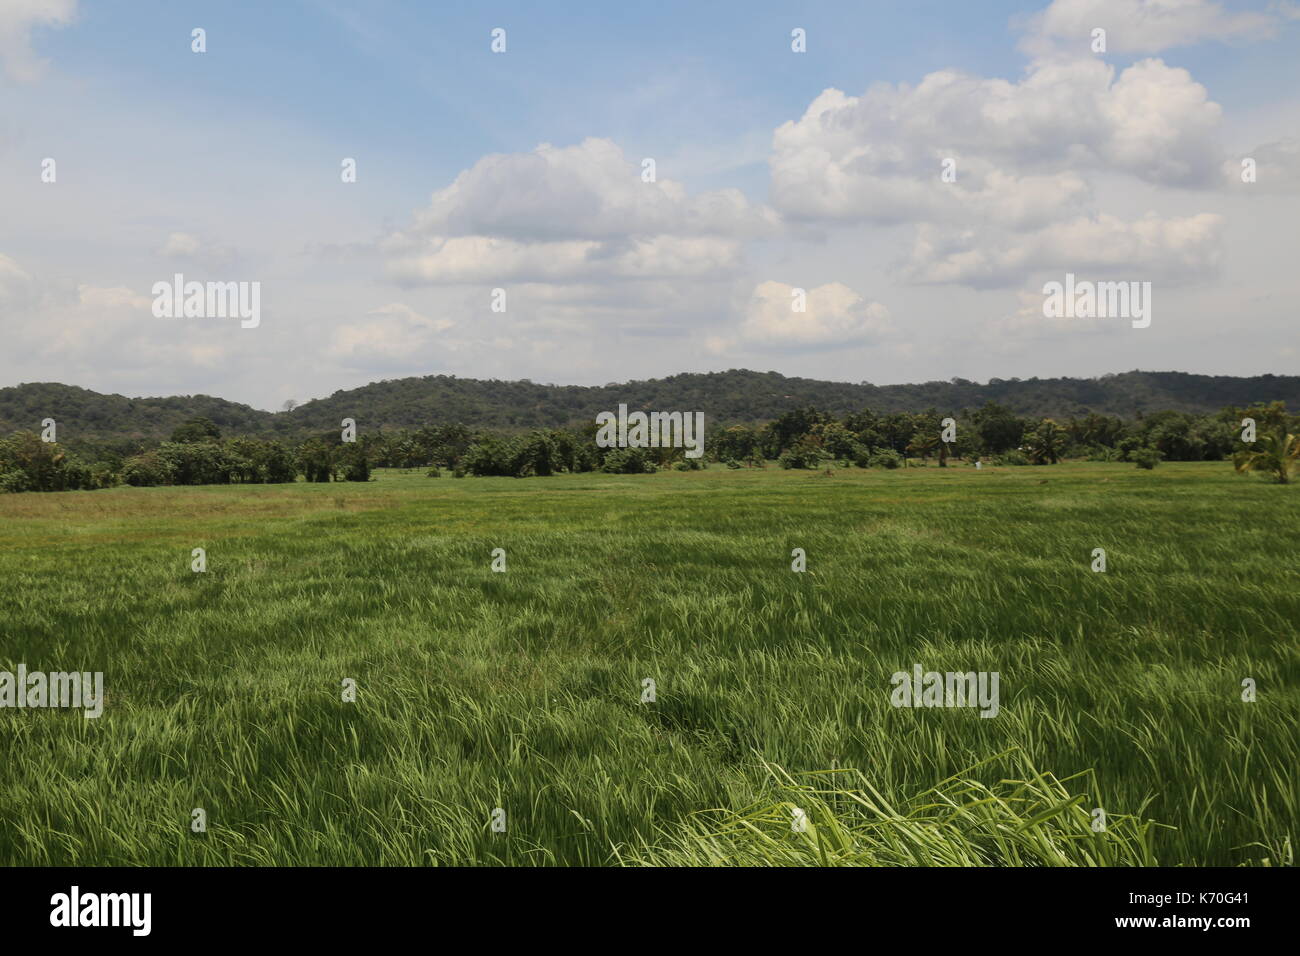 Rice paddy field, wind blowing, Sri Lanka, Asia Stock Photo